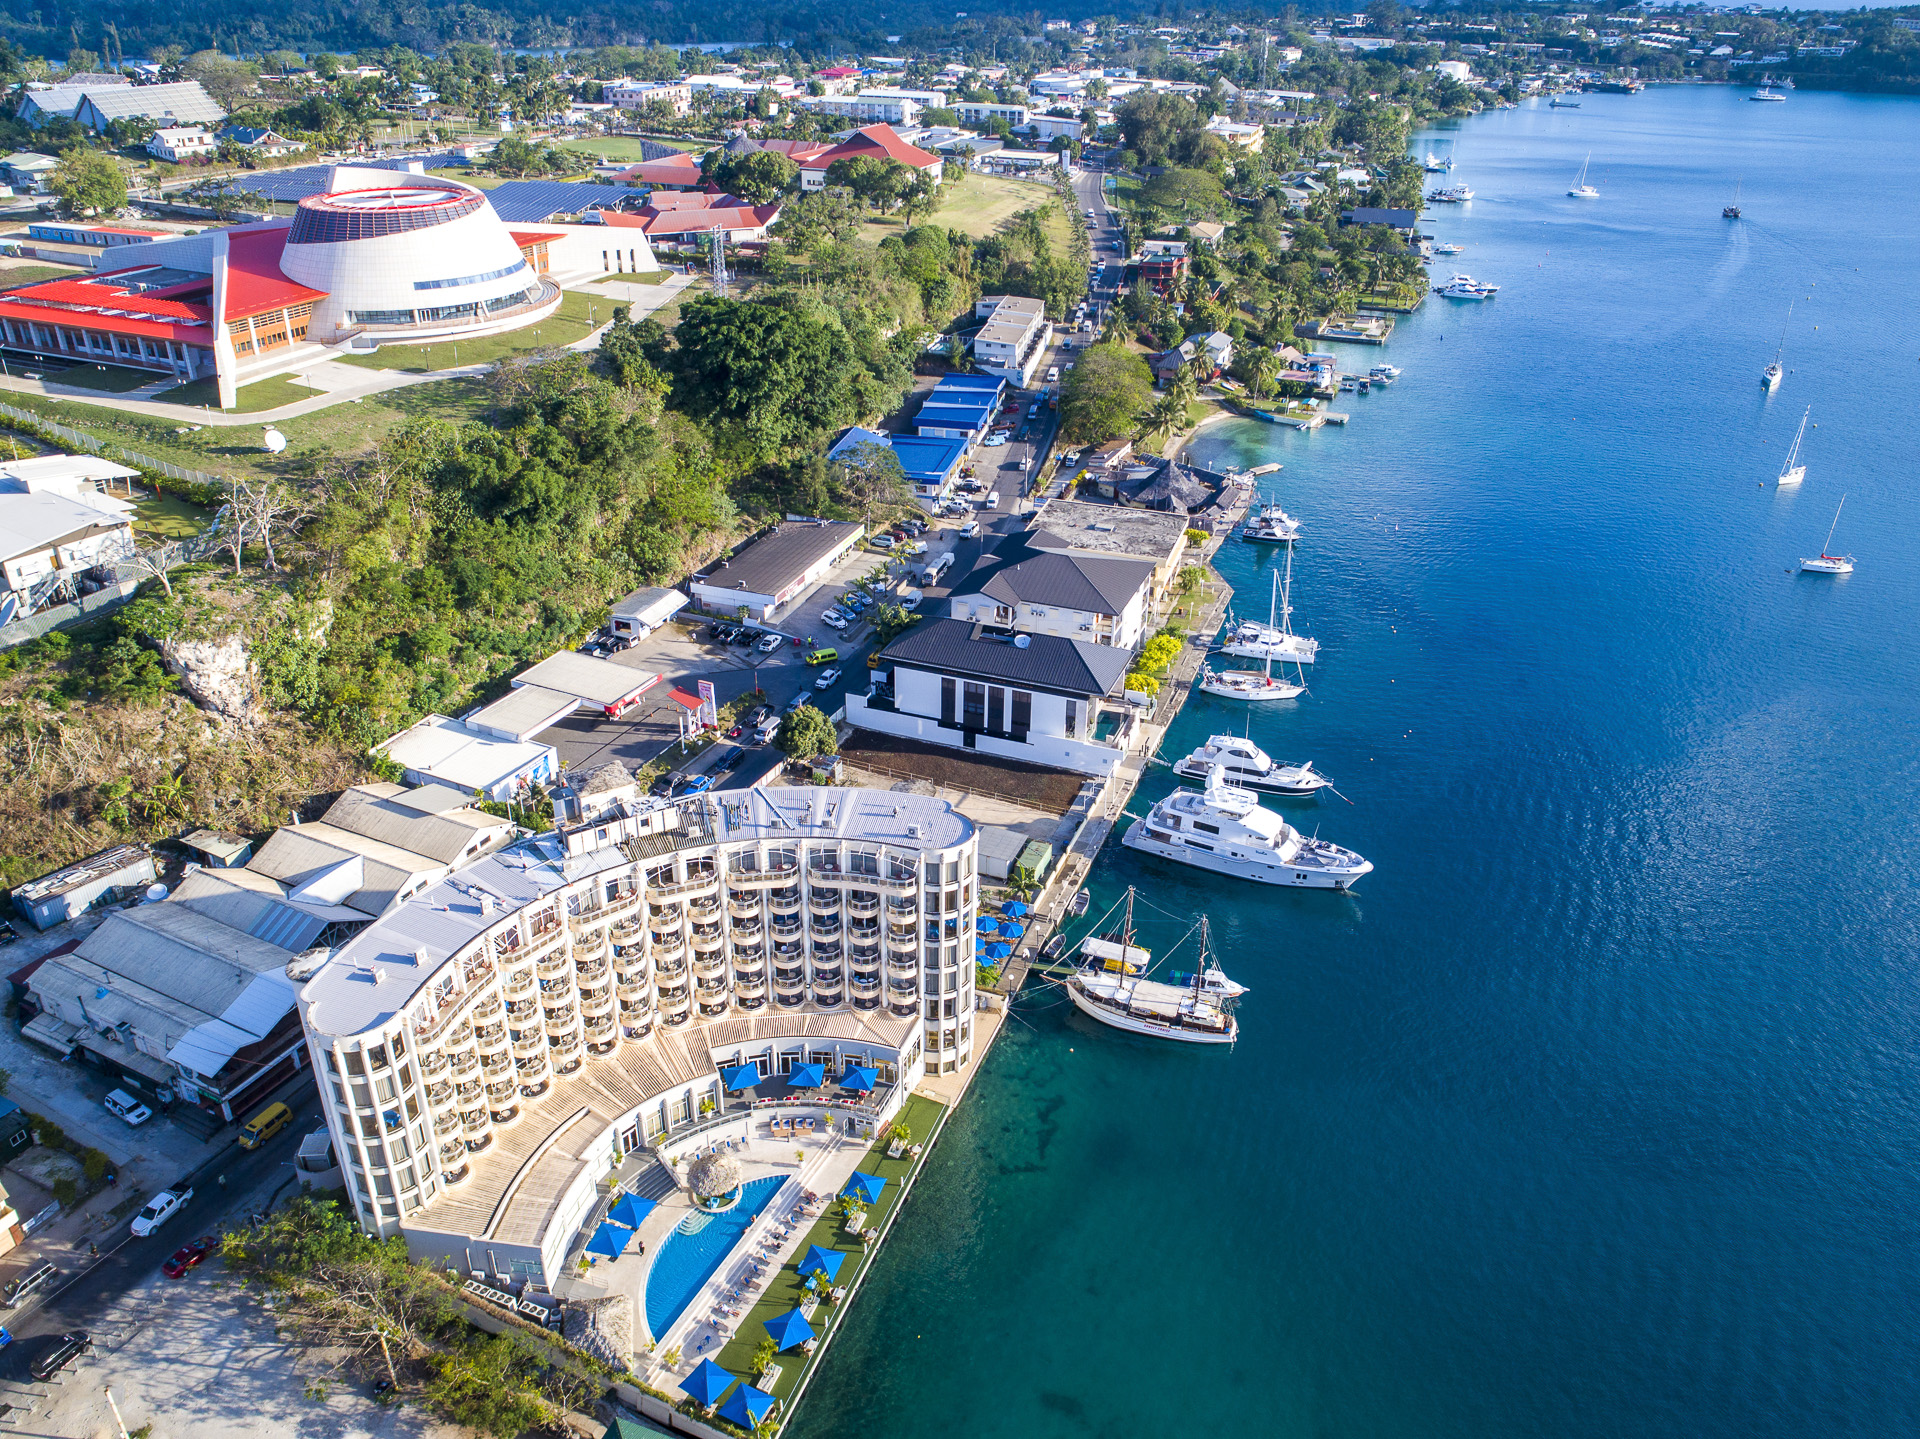 View of Port Vila by Vanuatu Tourism Office/David Kirkland